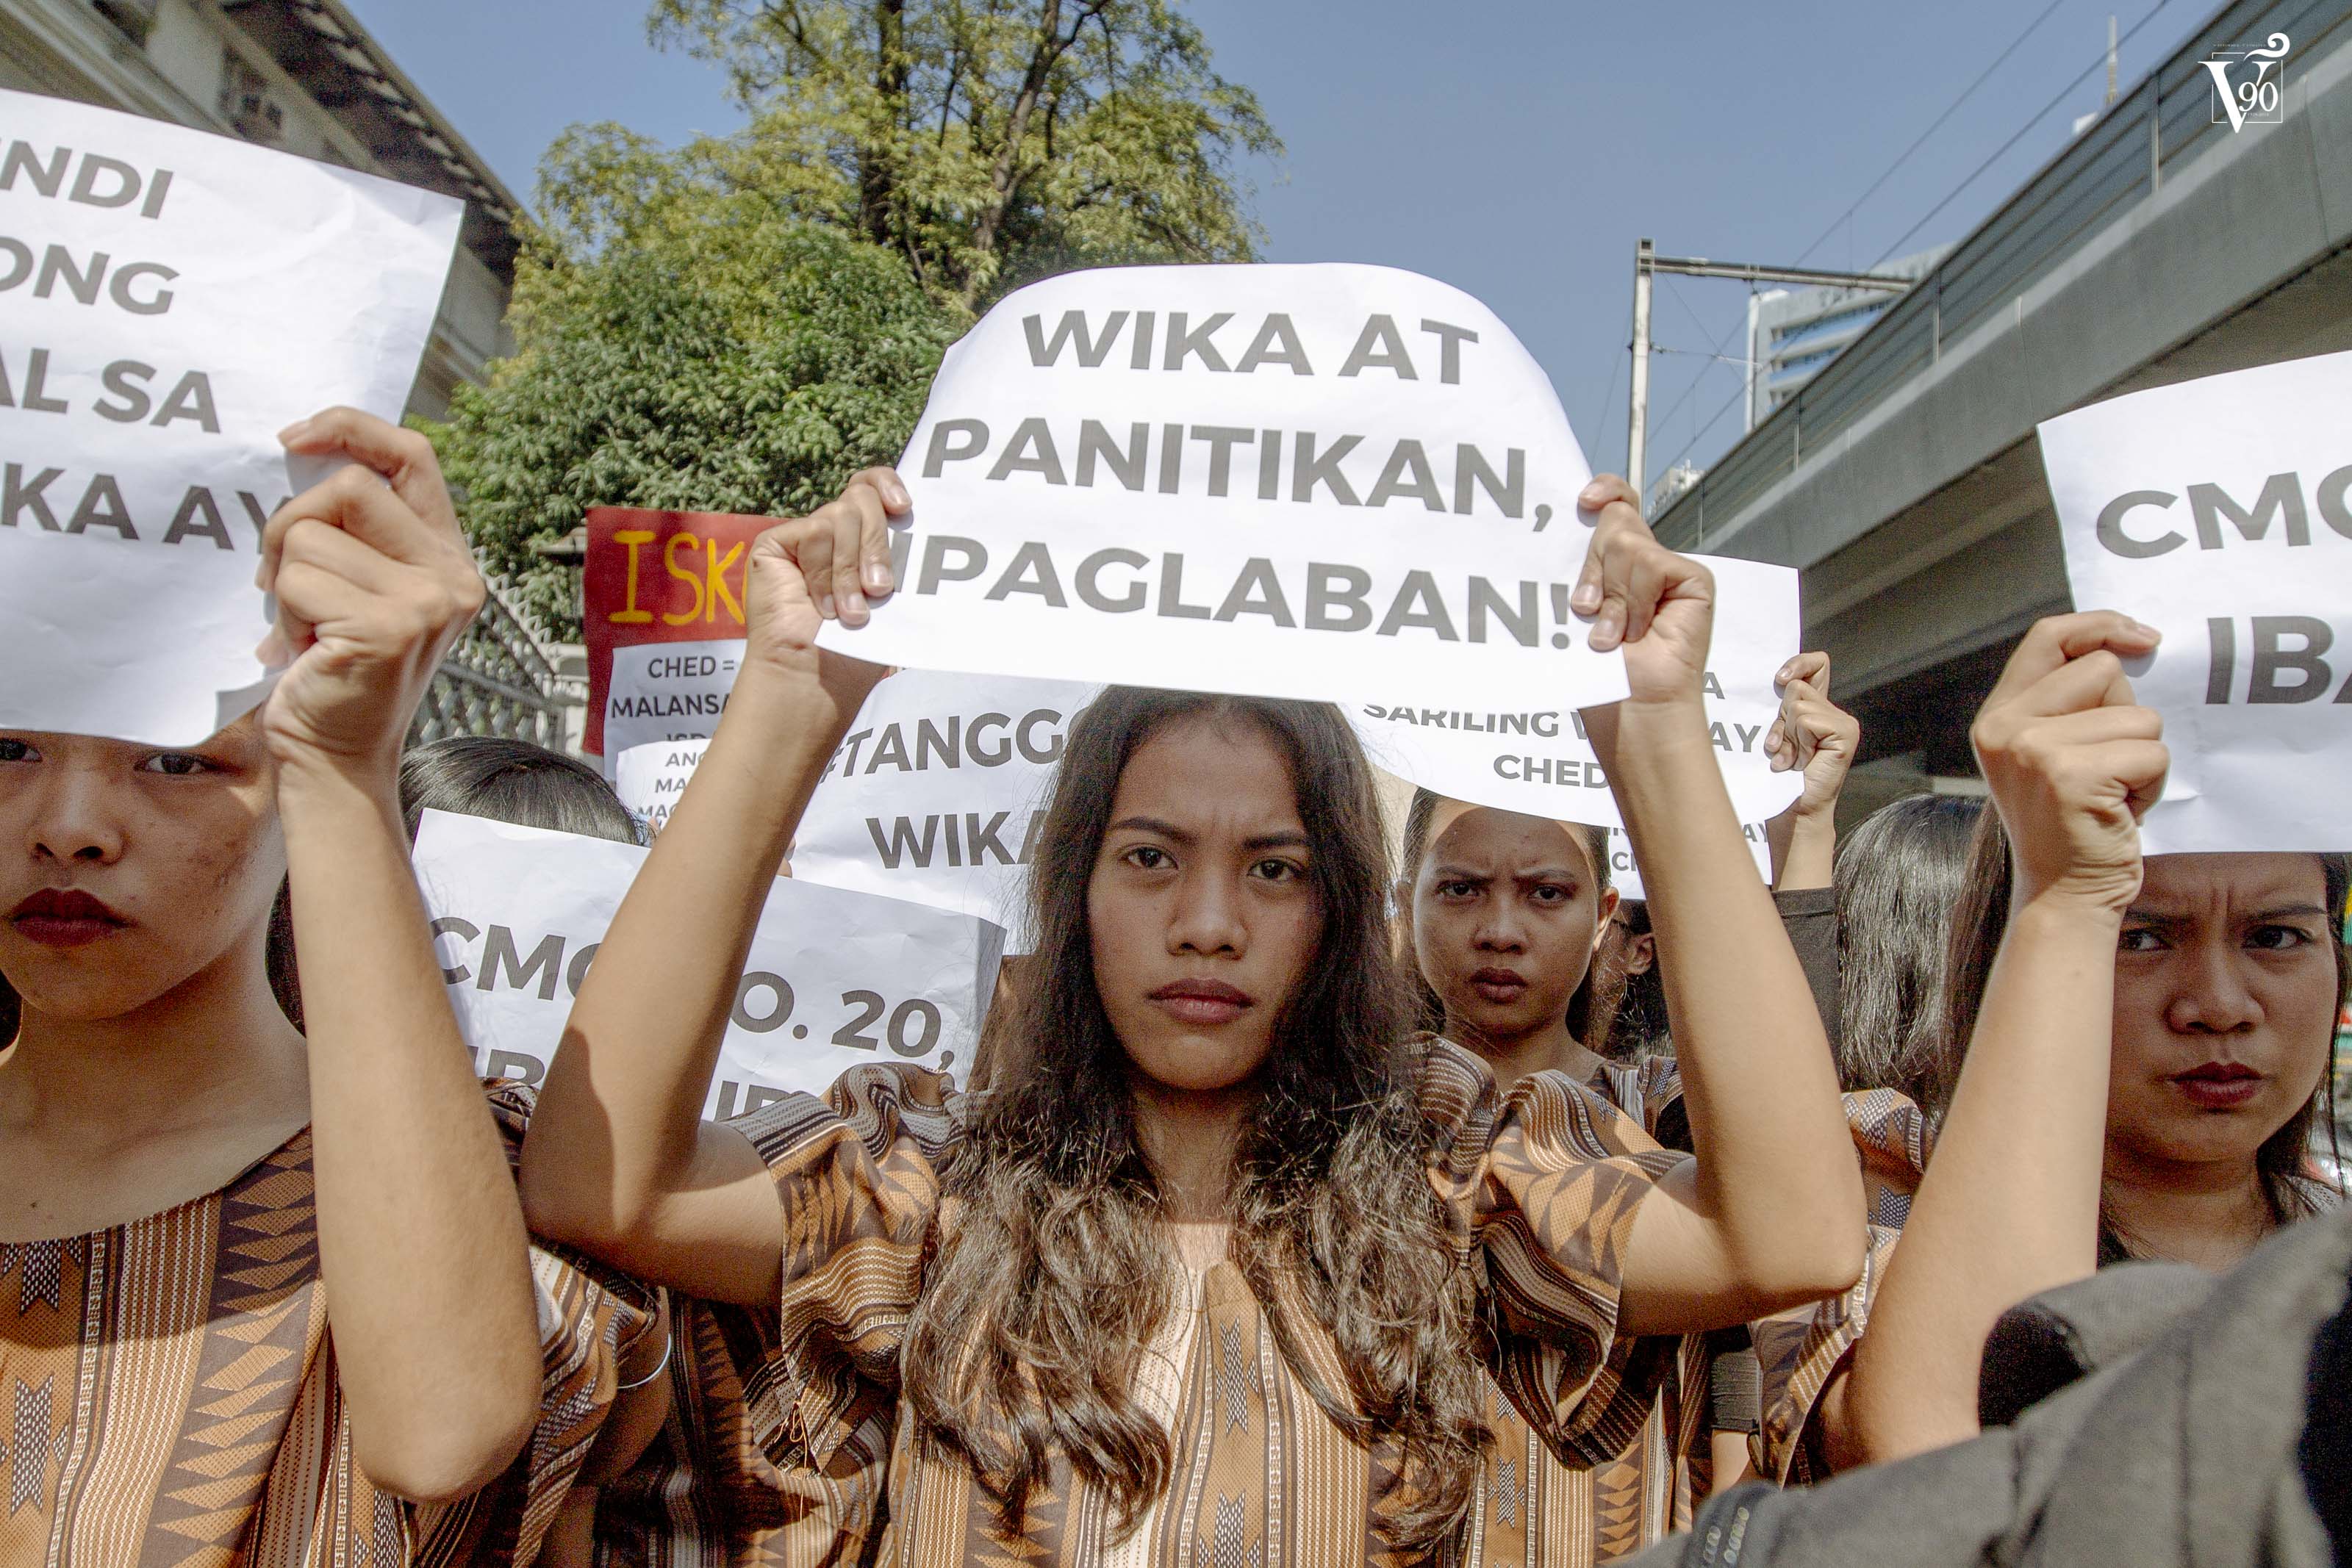 Pagtanggal sa Filipino, Panitikan sa kolehiyo, mariing tinutulan | The